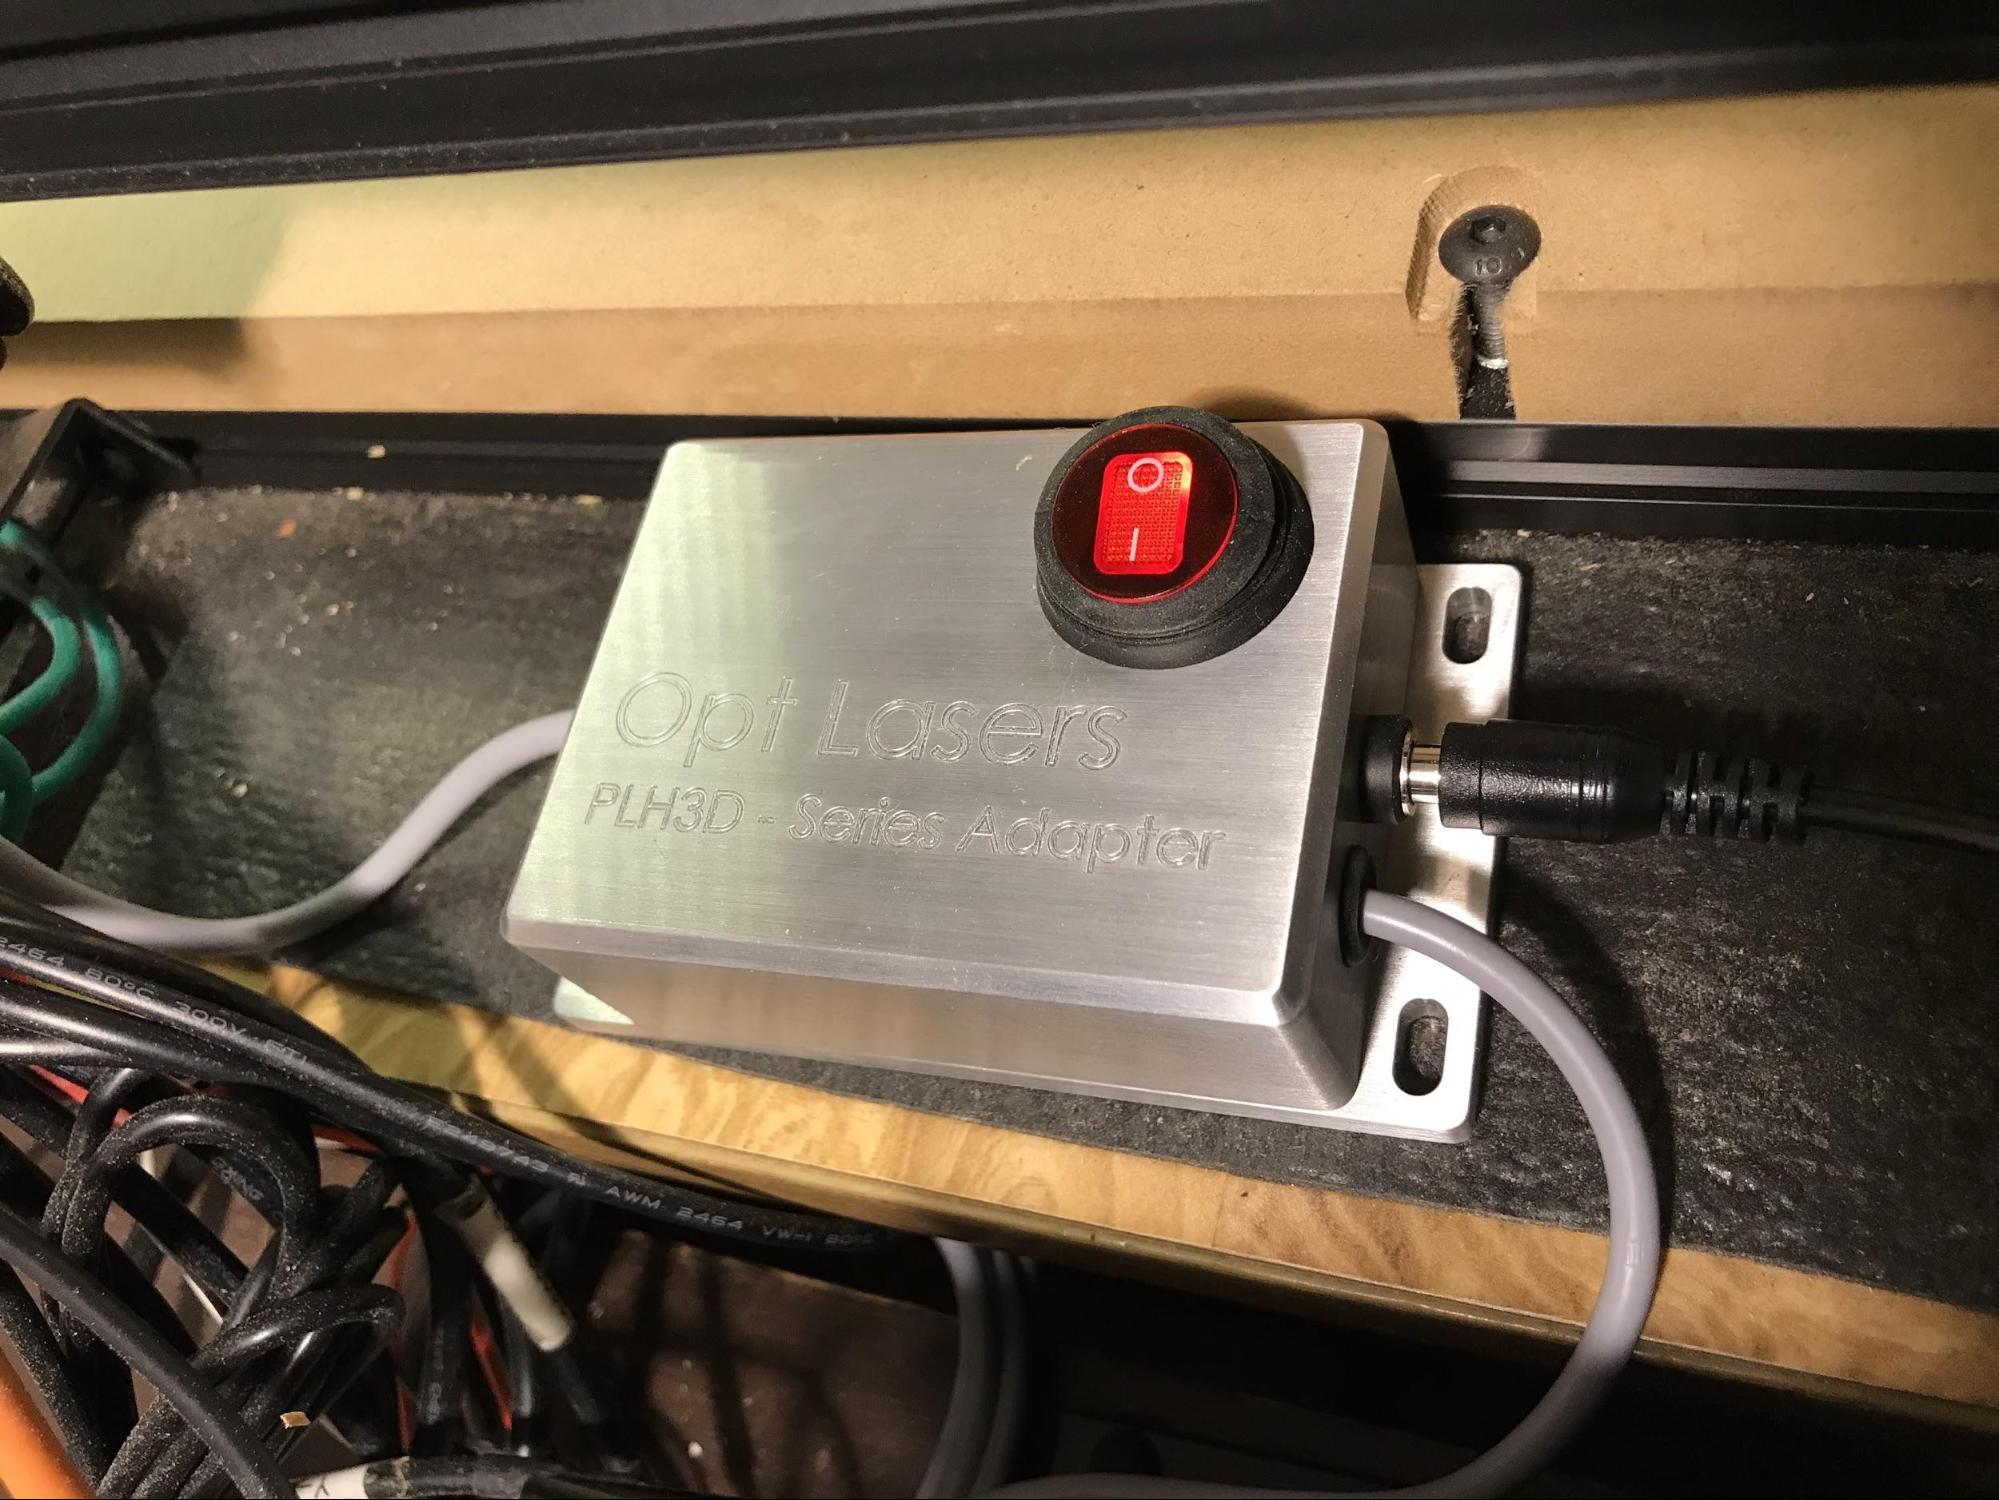 X-Carve Adapter for Laser Engraver